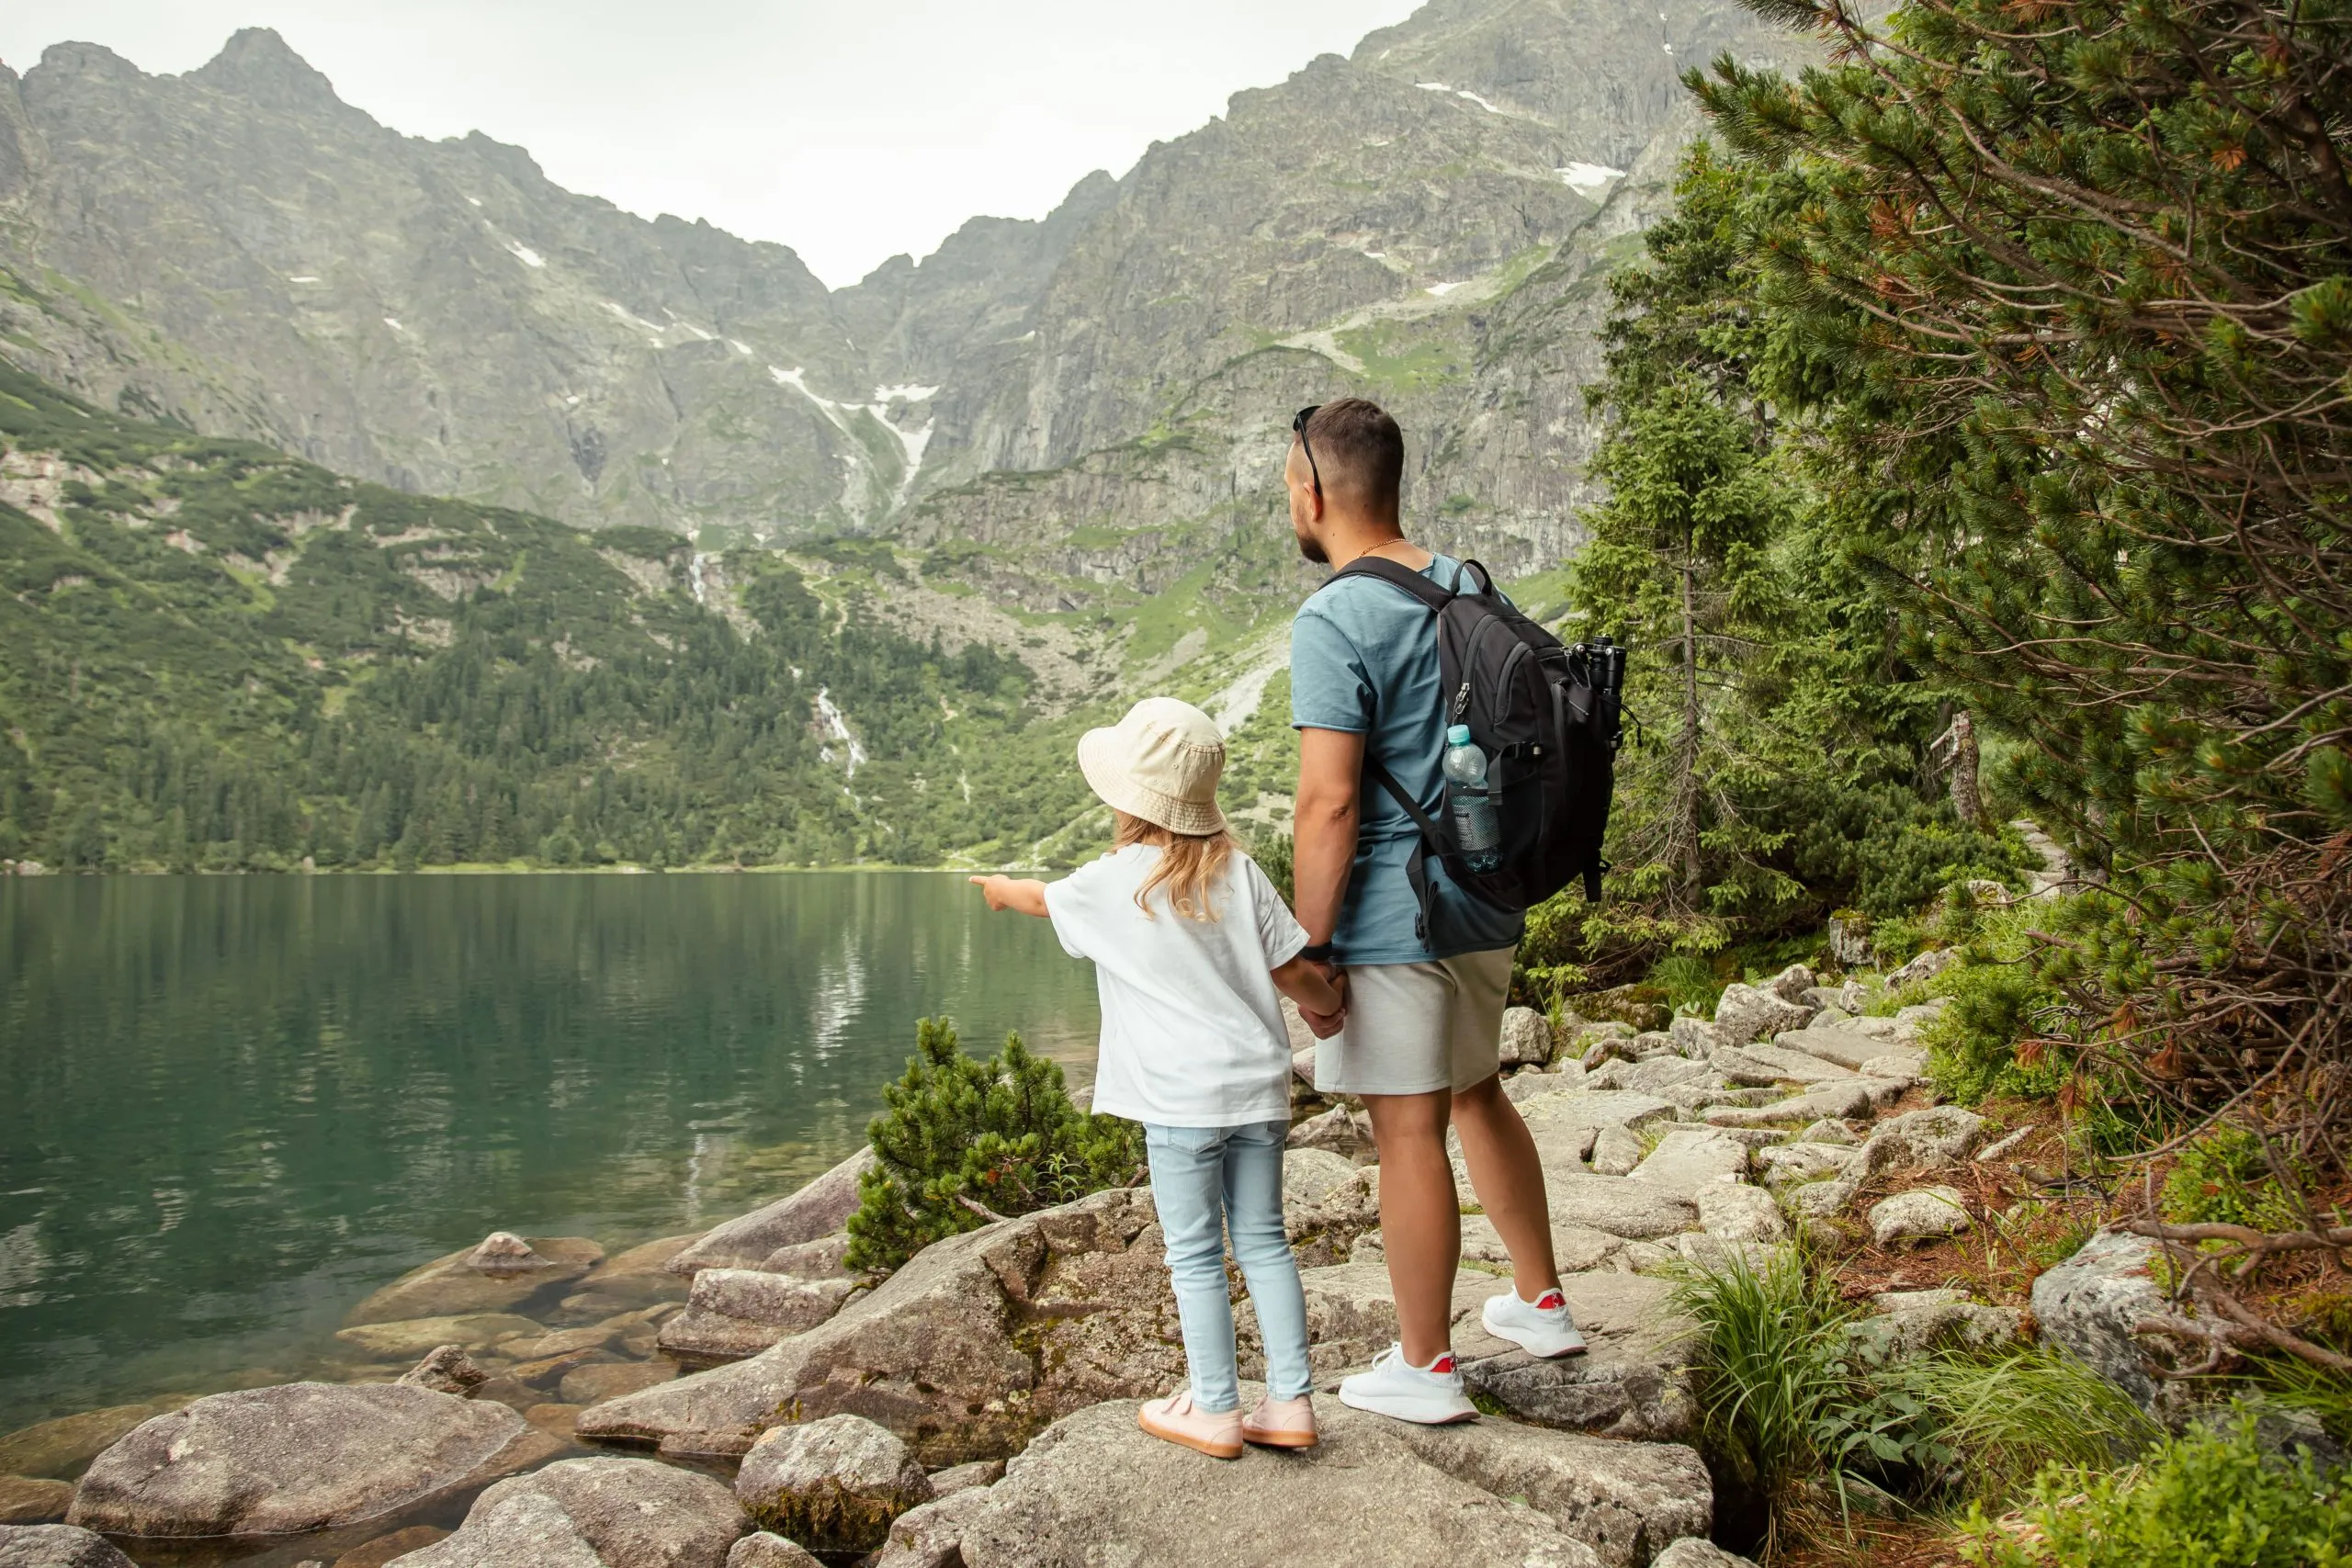 Homme et enfant en train de faire du tourisme dans les montagnes au lac Morskie Oko près de Zakopane, dans les Tatras, en Pologne. Concept de voyage en famille.